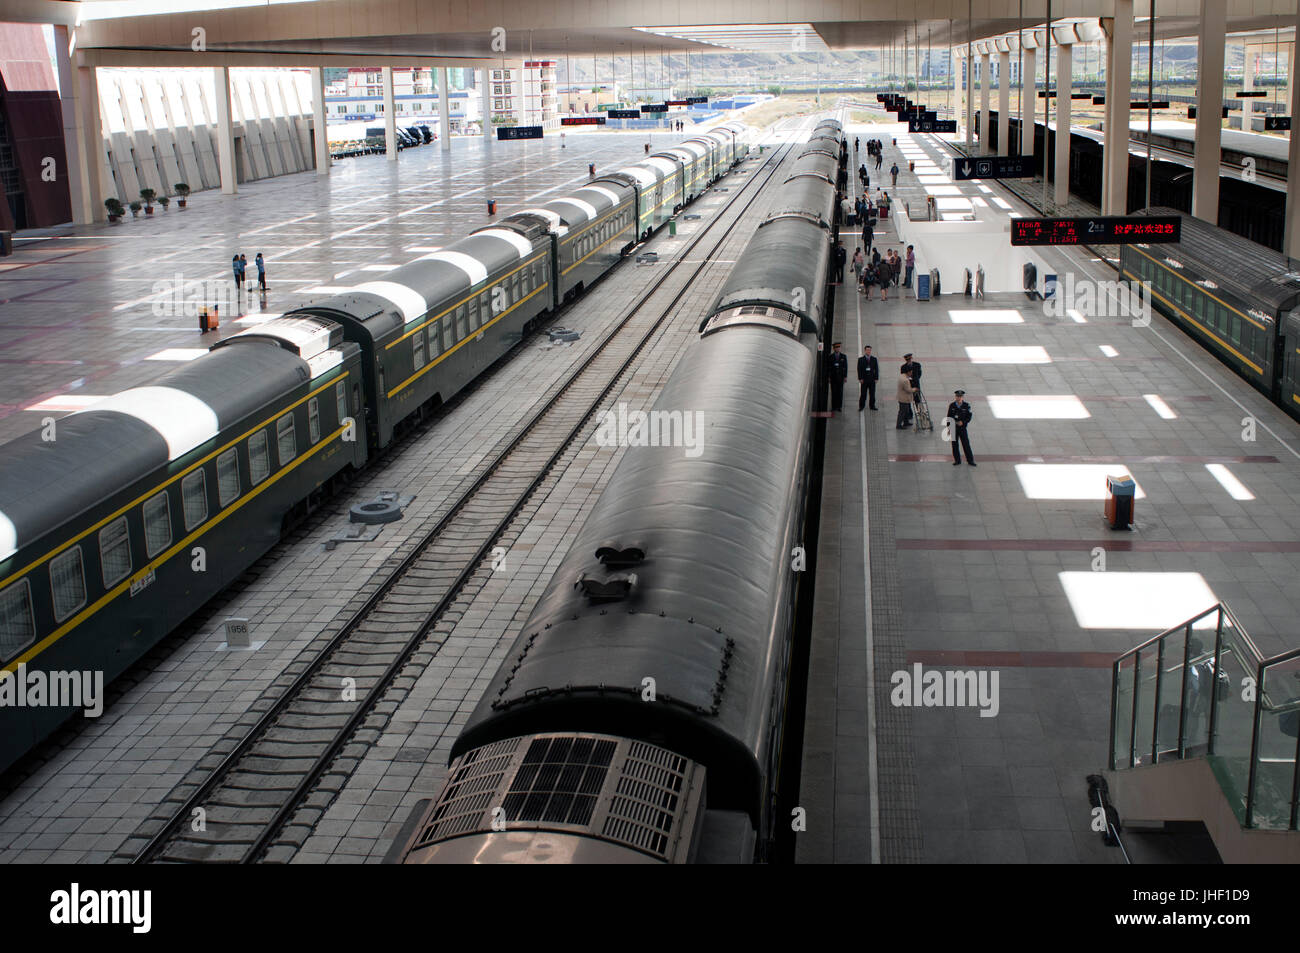 La estación de tren de Lhasa, punto de partida para el ferrocarril más alto del mundo, el ferrocarril Qingzang que extiende a Pekín y Shanghai. Foto de stock